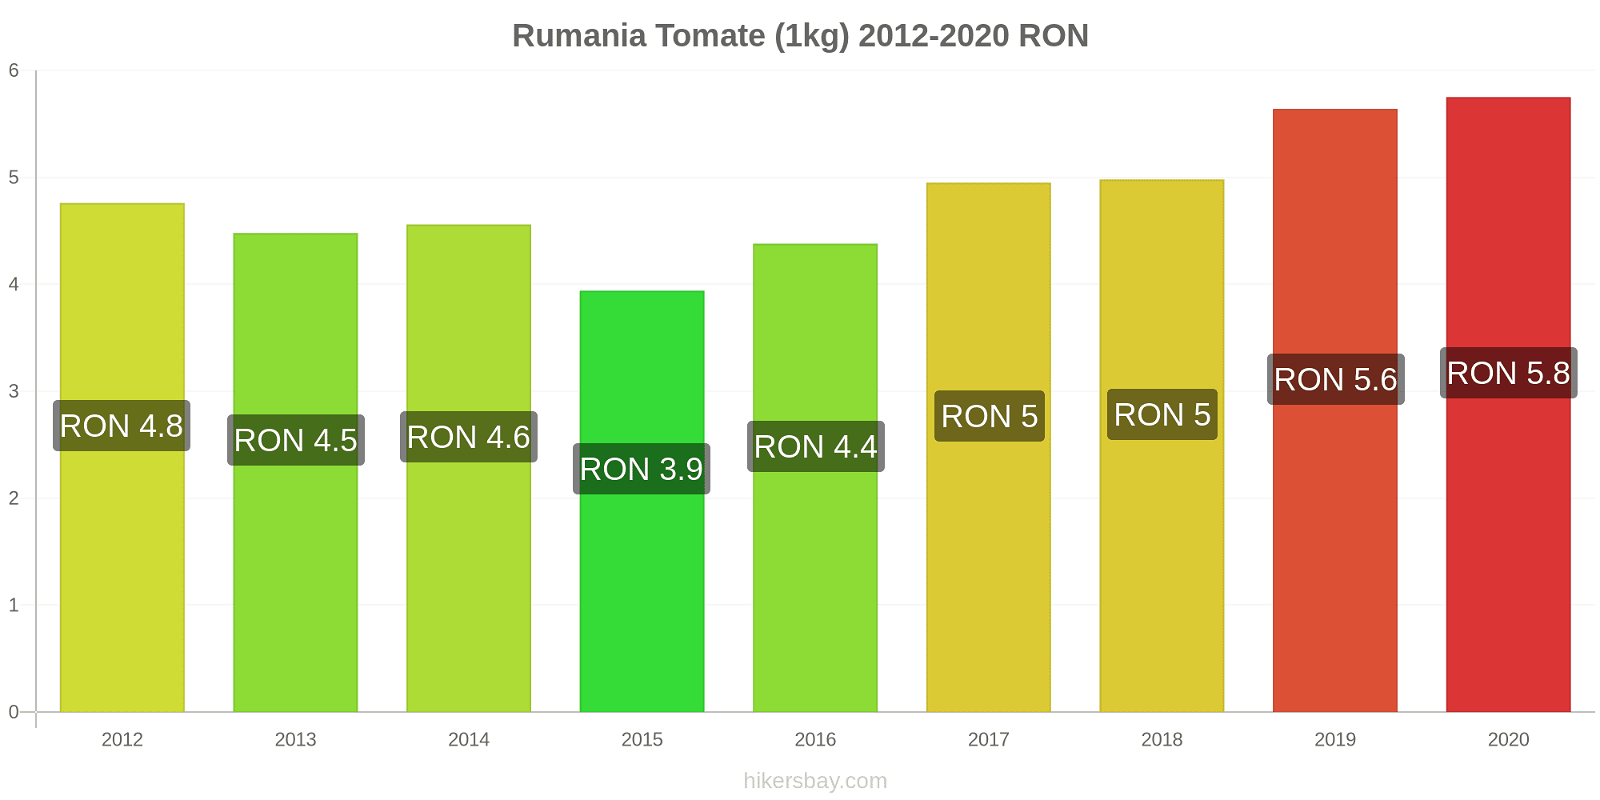 Rumania cambios de precios Tomate (1kg) hikersbay.com